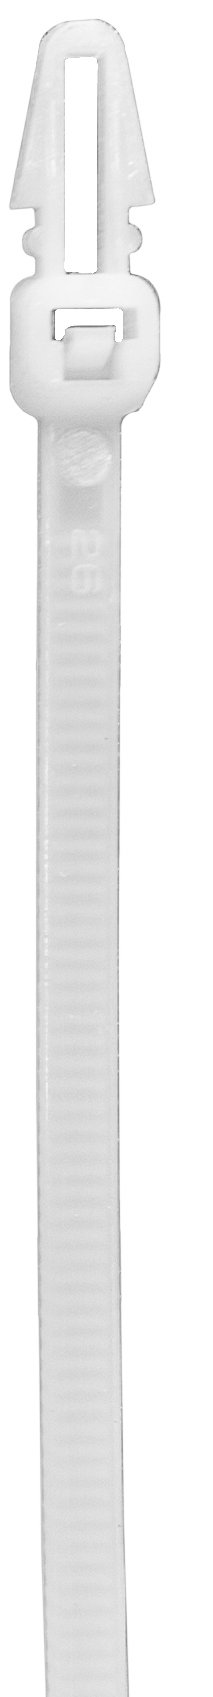 Хомут пластиковый с анкером без опоры 200х4,8 мм 170950 белый, упаковка  100 шт - фото